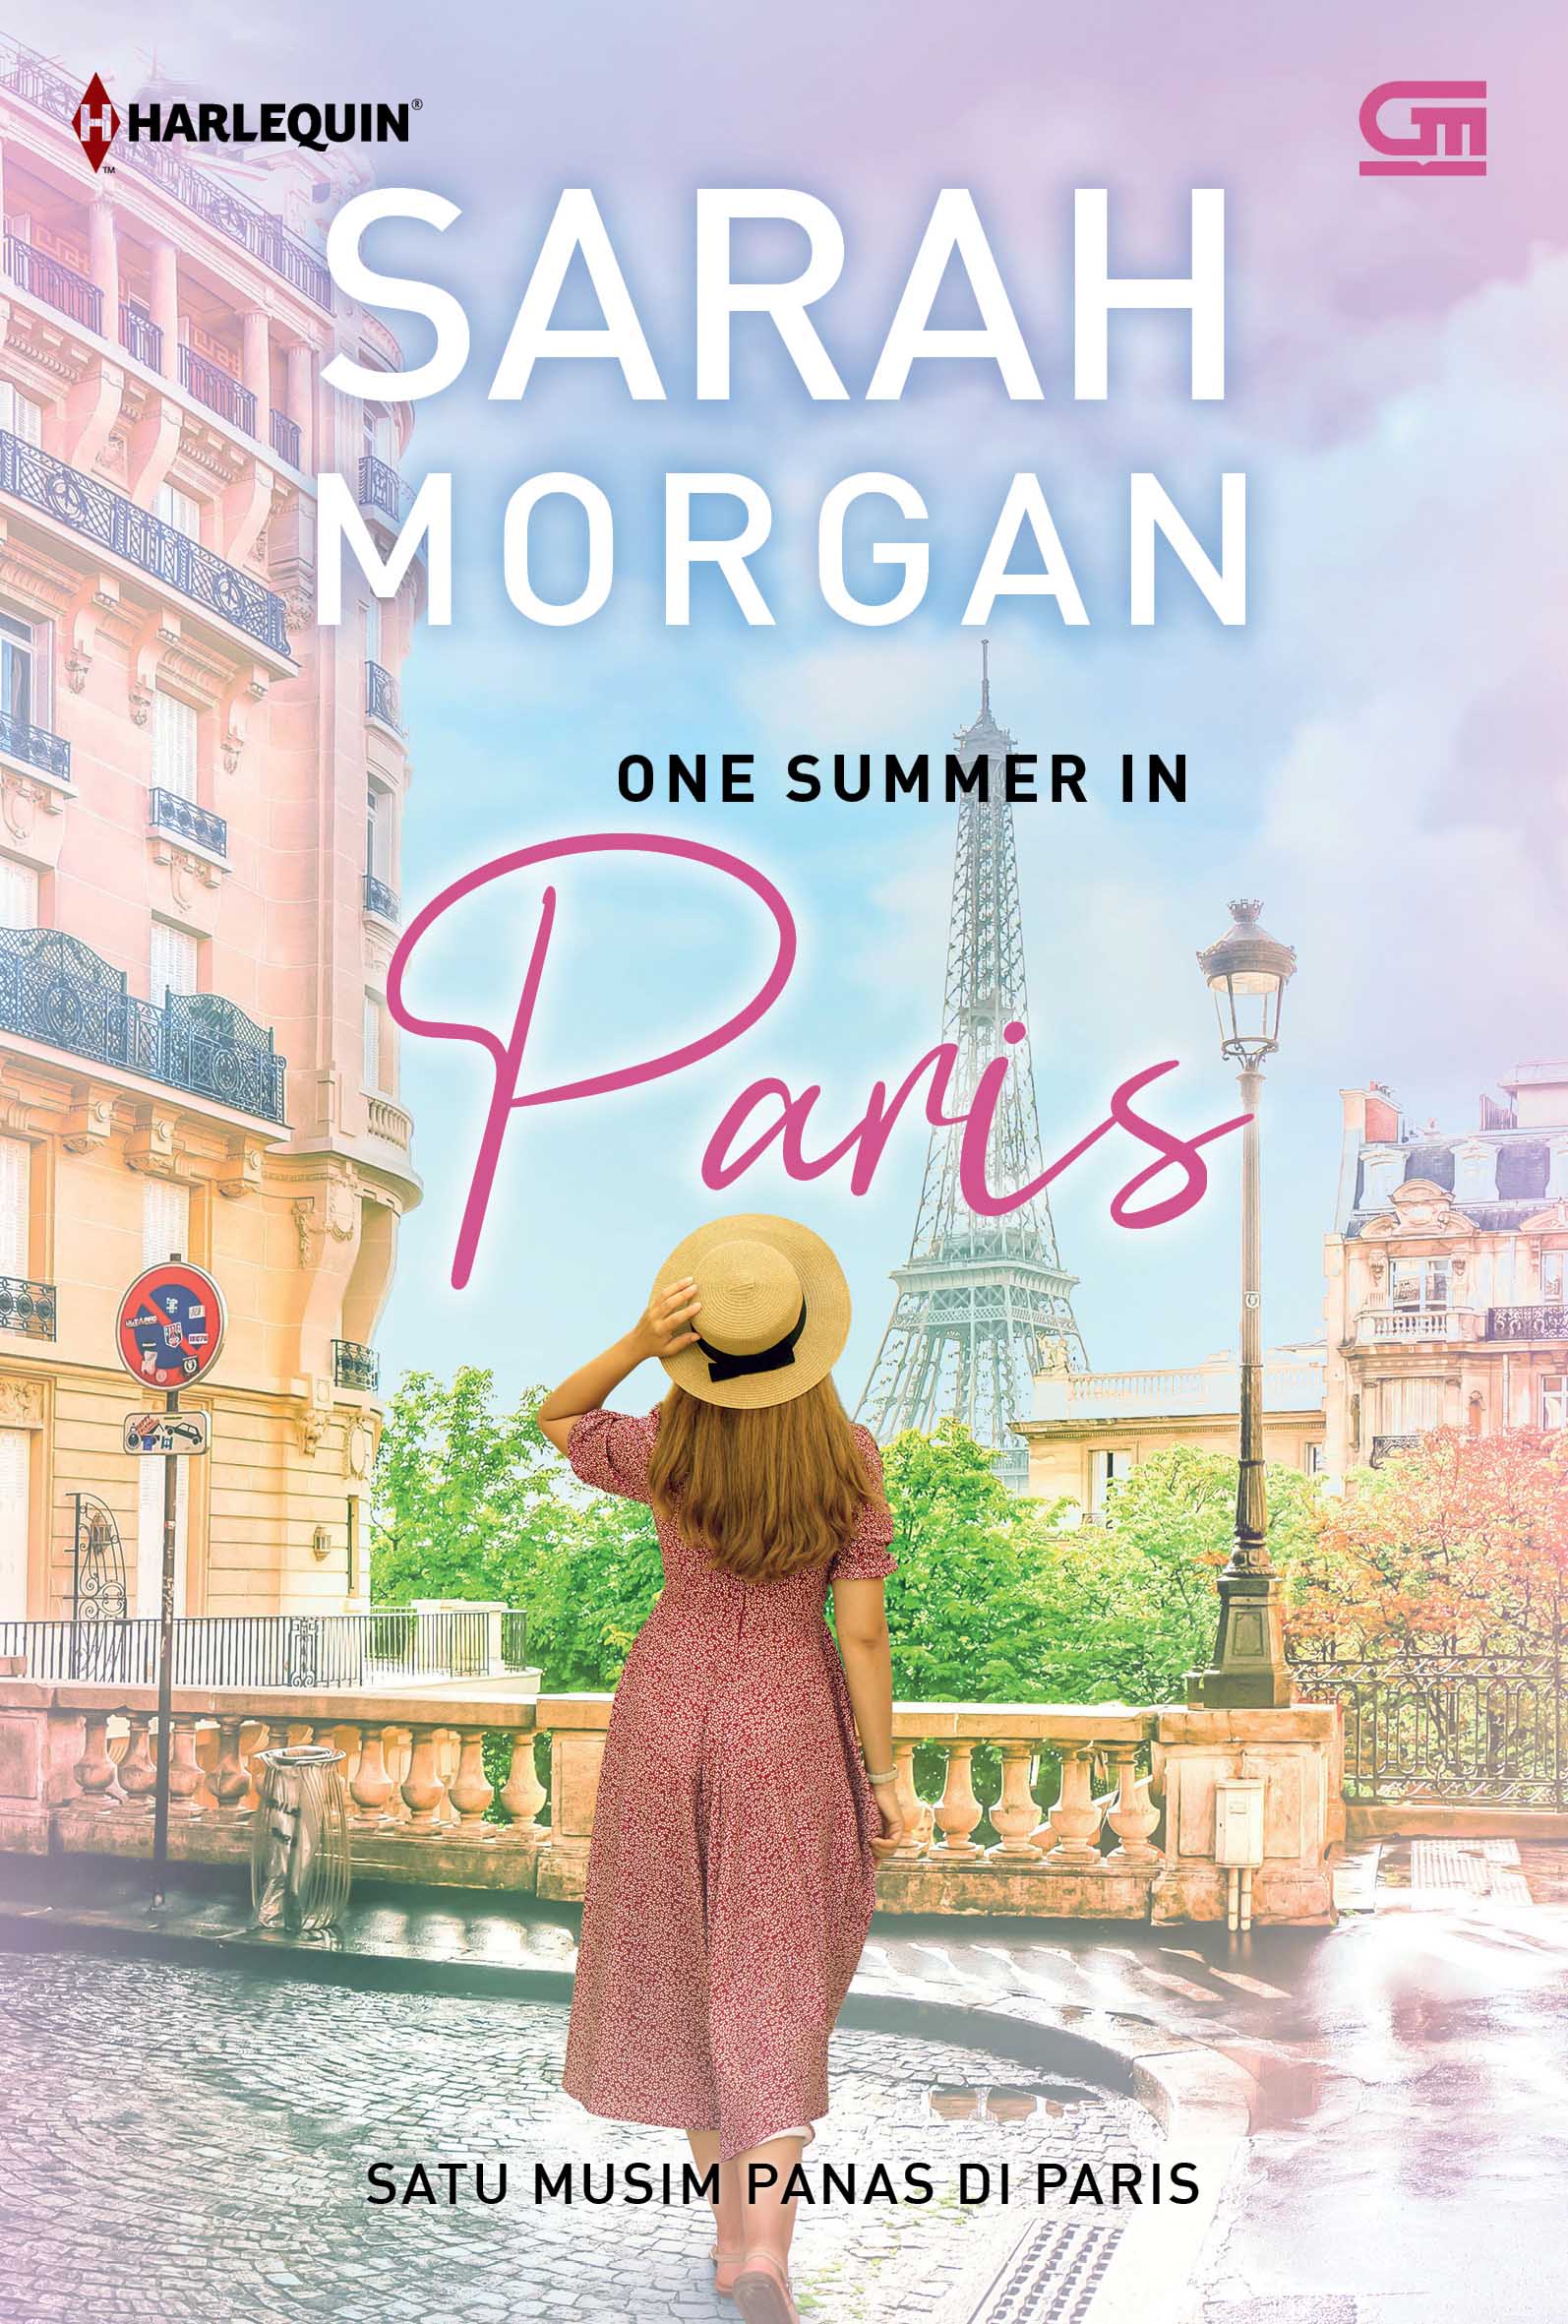 Satu musim panas di Paris = One Summer In Paris